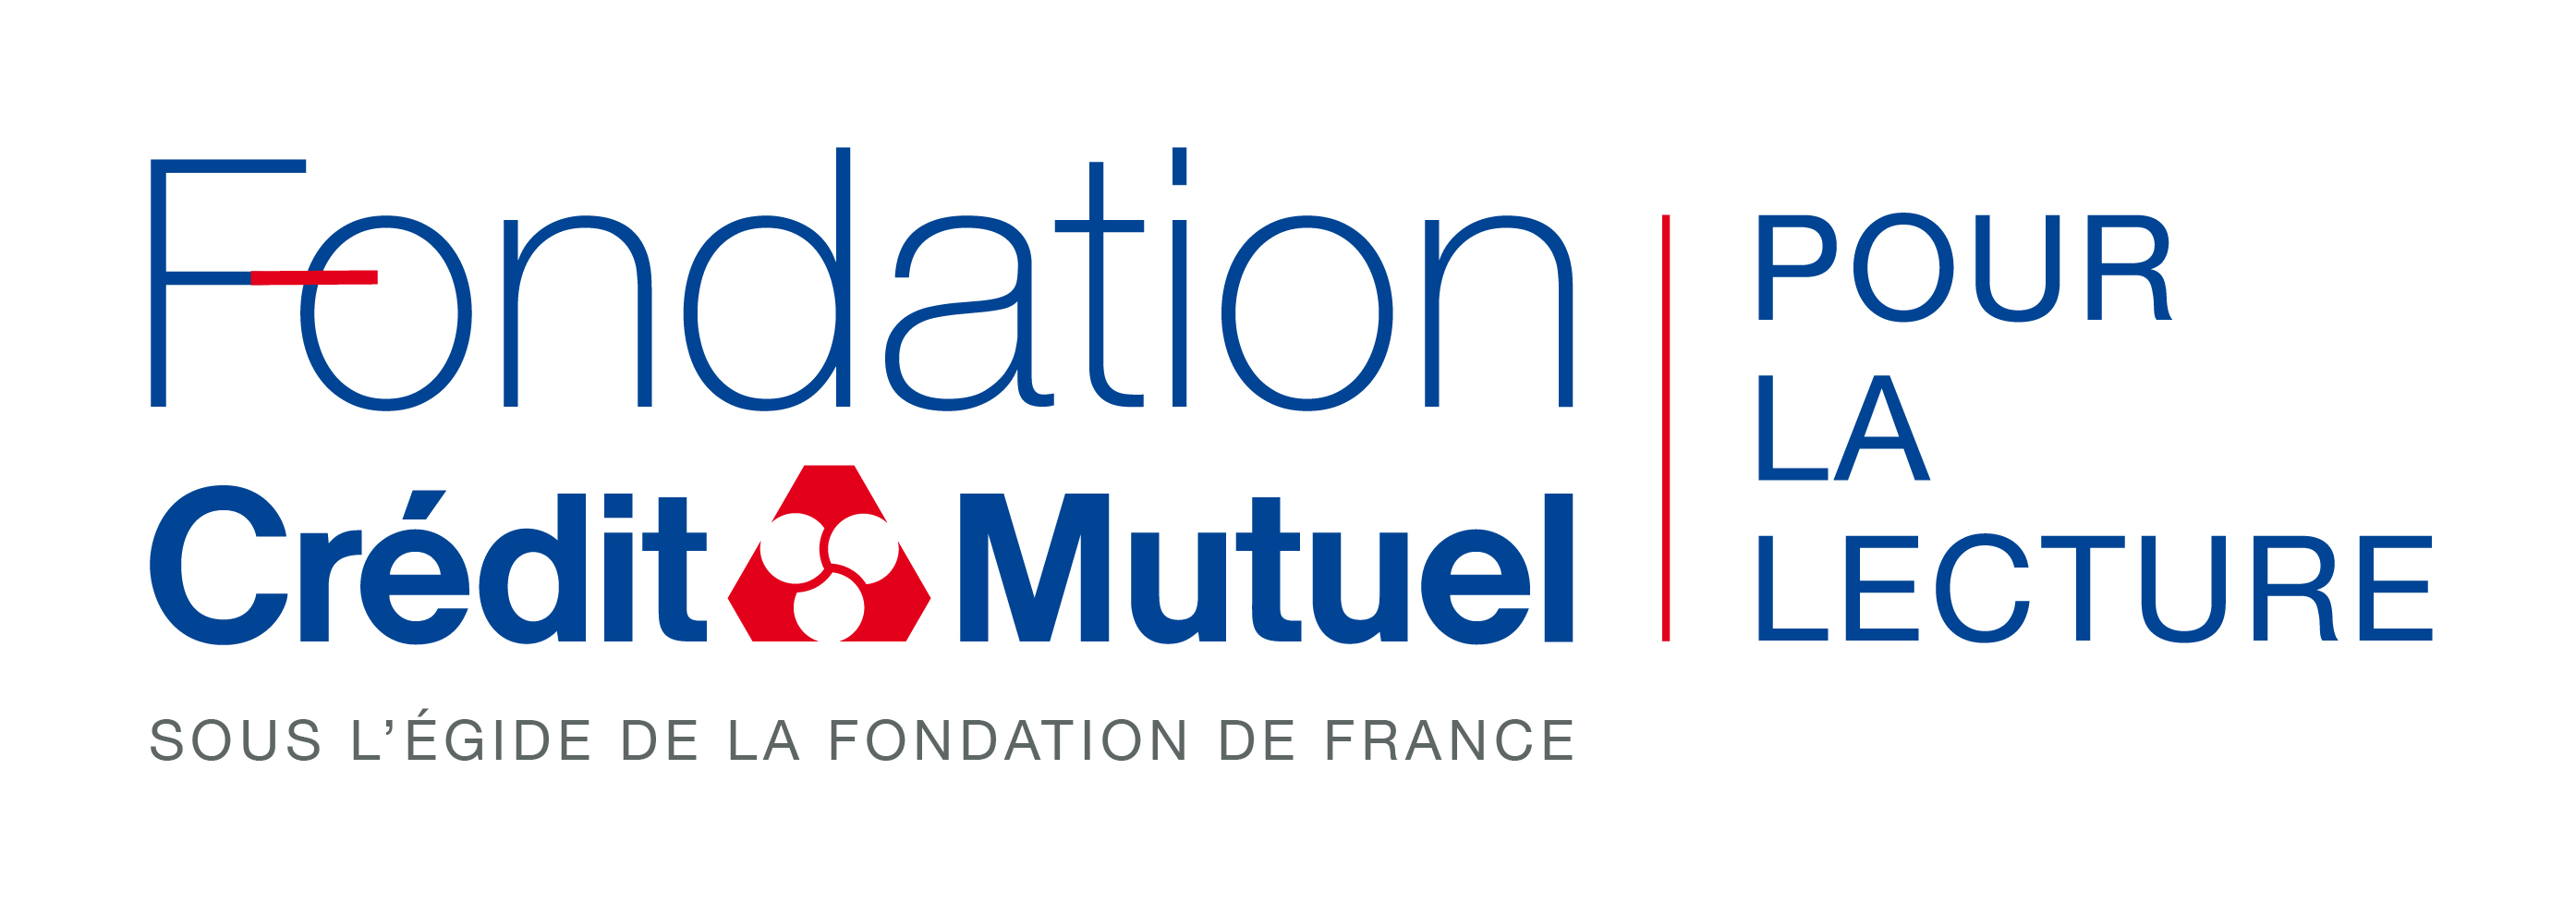 Logo Fondation du crédit mutuel pour la lecture